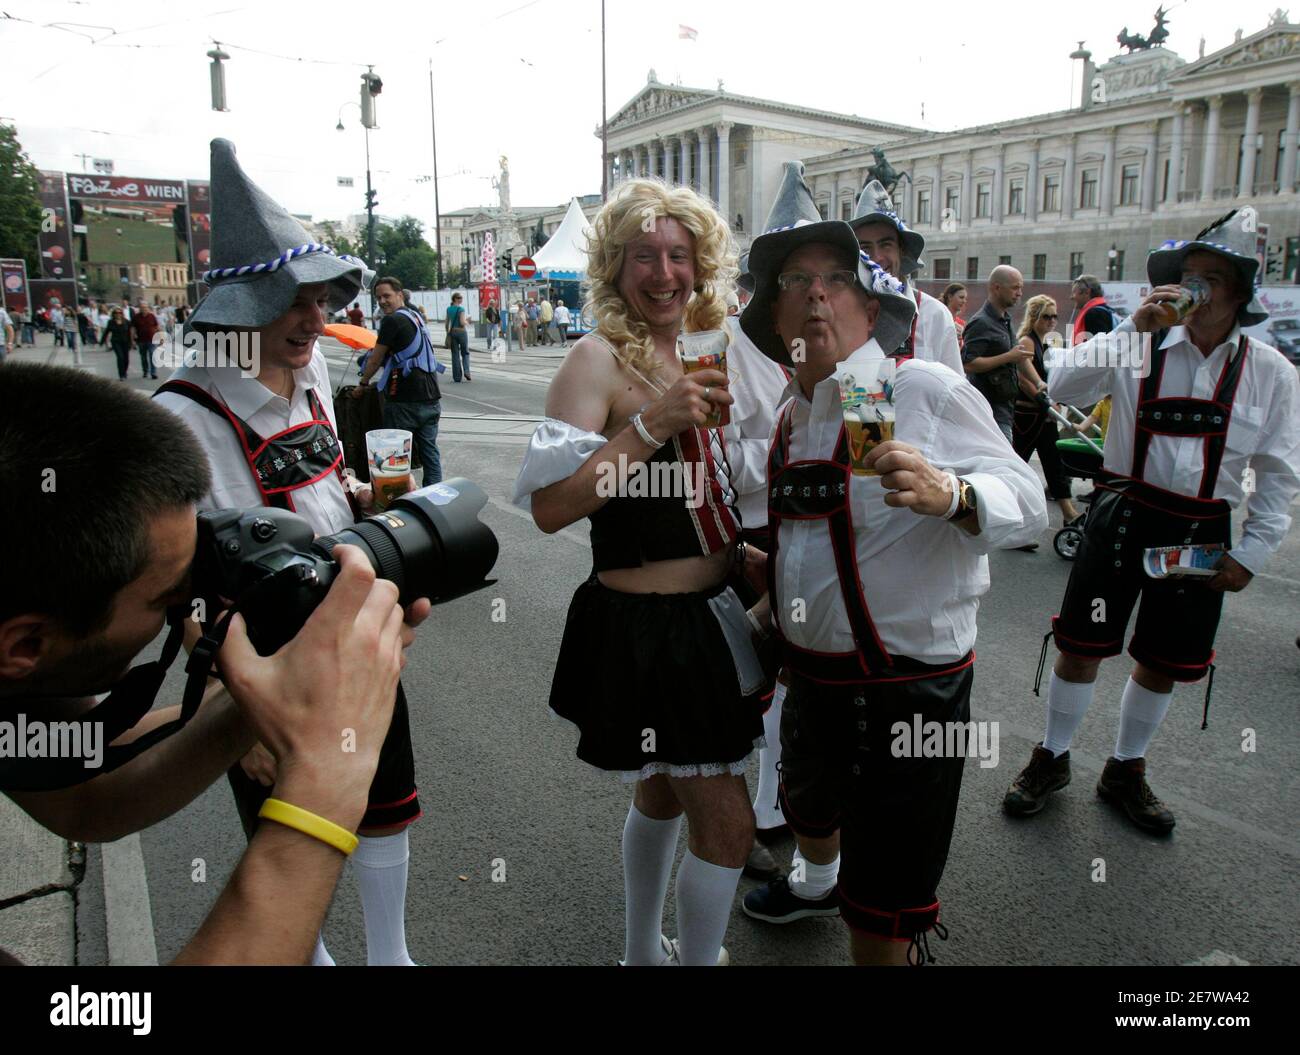 Fußballfans aus England, in Lederhosen- und Dirndl-Kostümen gekleidet, posieren für Fotografen in der offiziellen Euro 2008 Fanzone vor dem Wiener Burgtheater am 7. Juni 2008. REUTERS/Herwig Prammer (ÖSTERREICH) Stockfoto